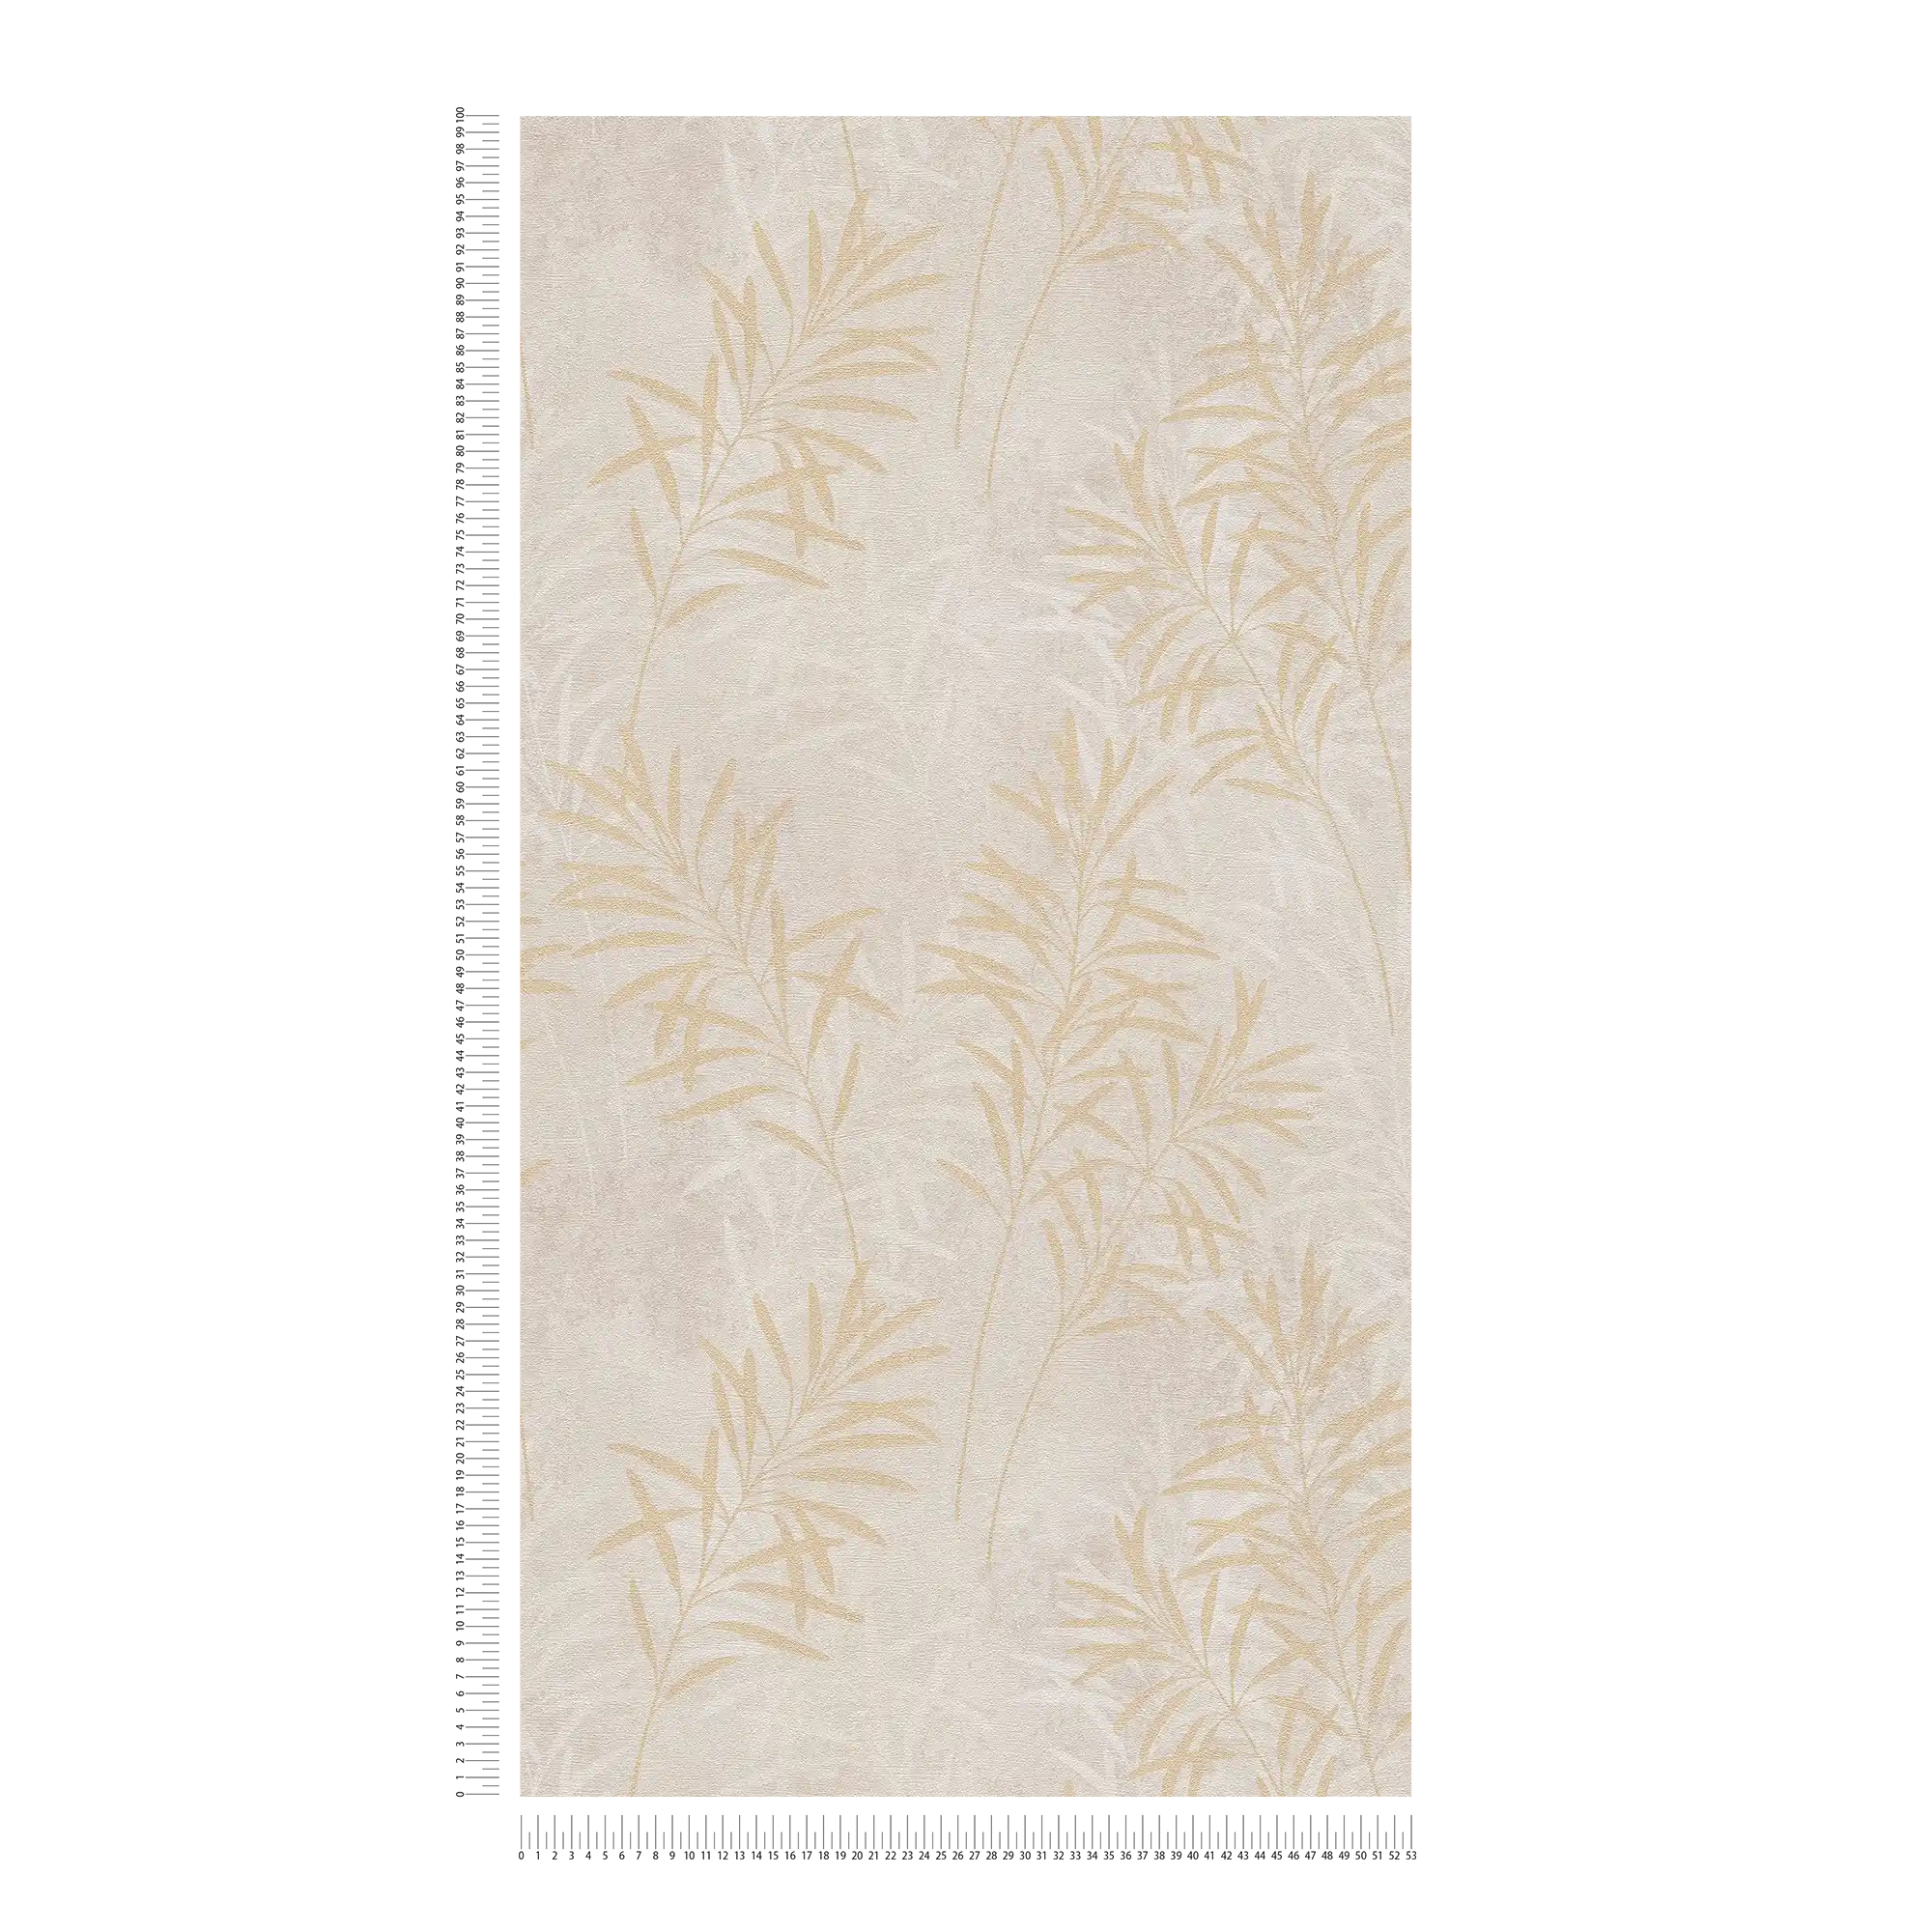             Papier peint intissé avec motif floral de palmiers - crème, gris, or
        